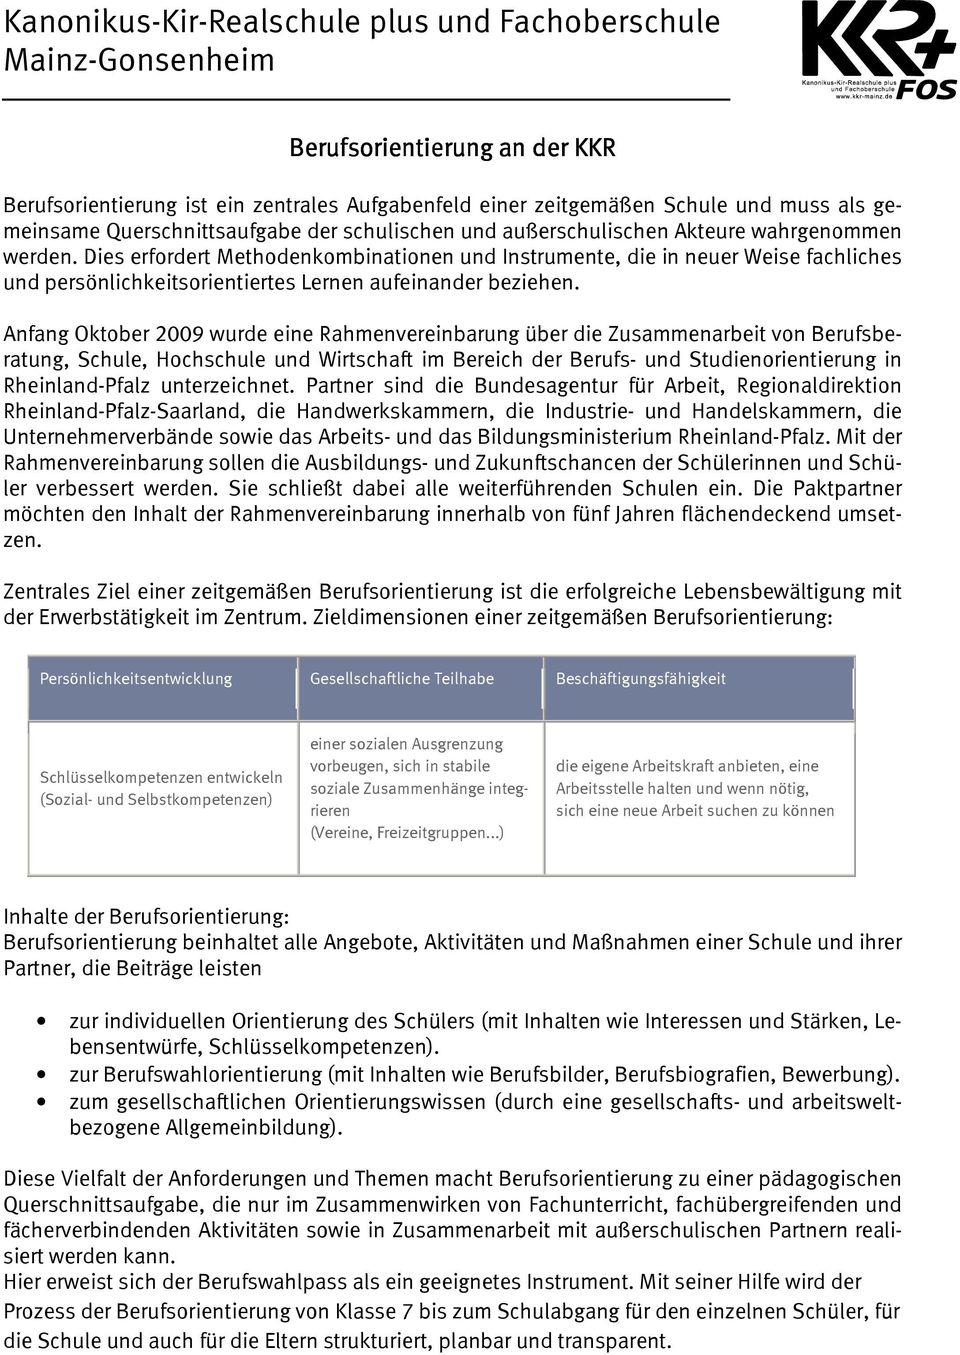 Anfang Oktober 2009 wurde eine Rahmenvereinbarung über die Zusammenarbeit von Berufsberatung, Schule, Hochschule und Wirtschaft im Bereich der Berufs- und Studienorientierung in Rheinland-Pfalz